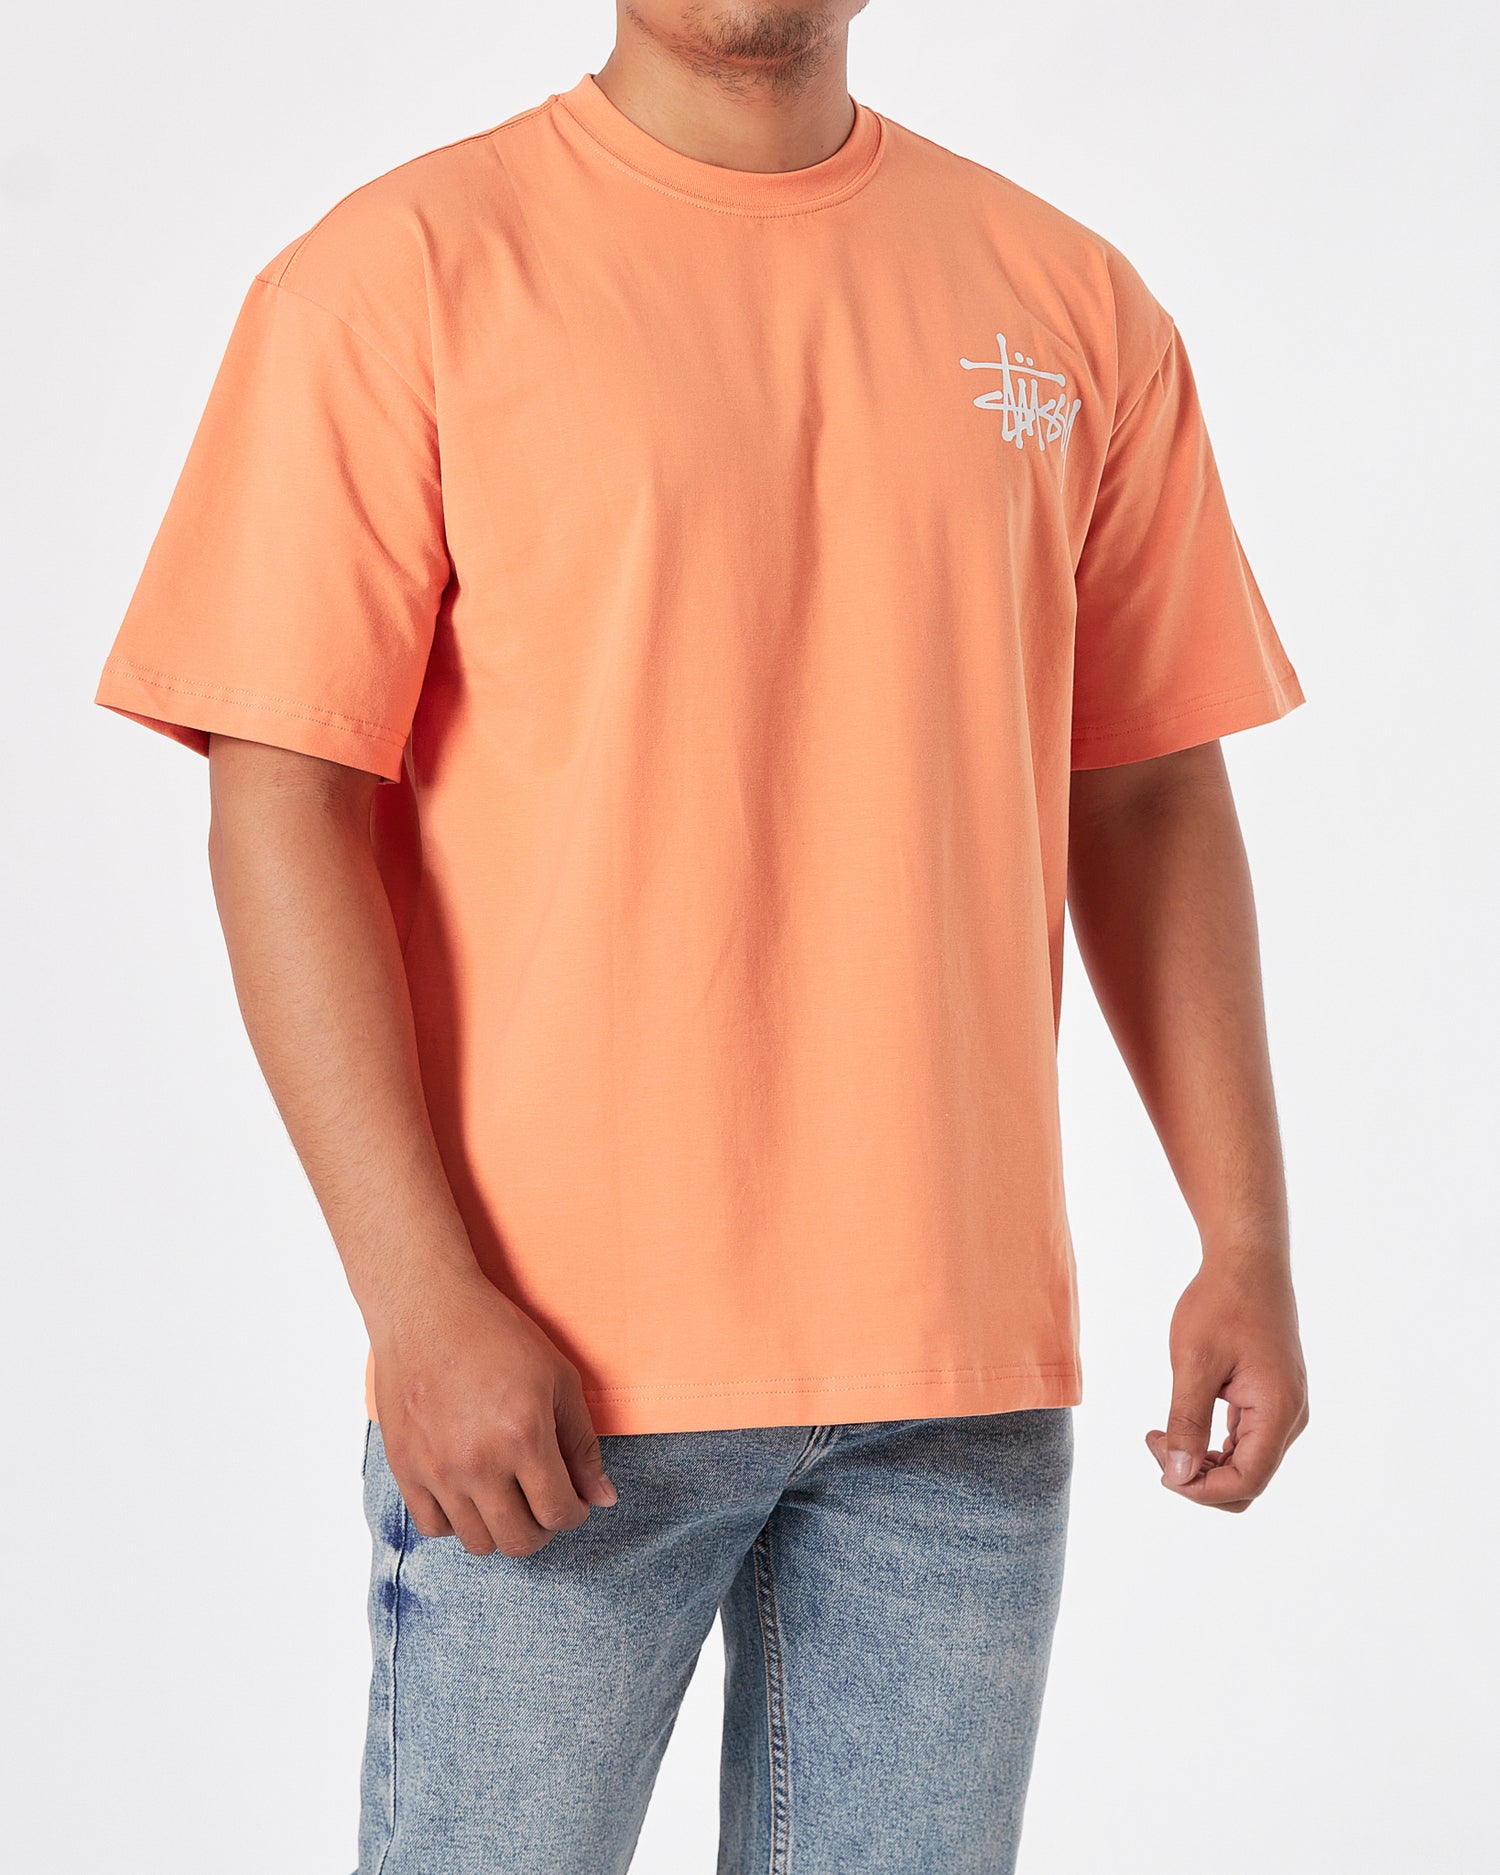 STU Front Back Logo Printed Men Orange T-Shirt 20.90